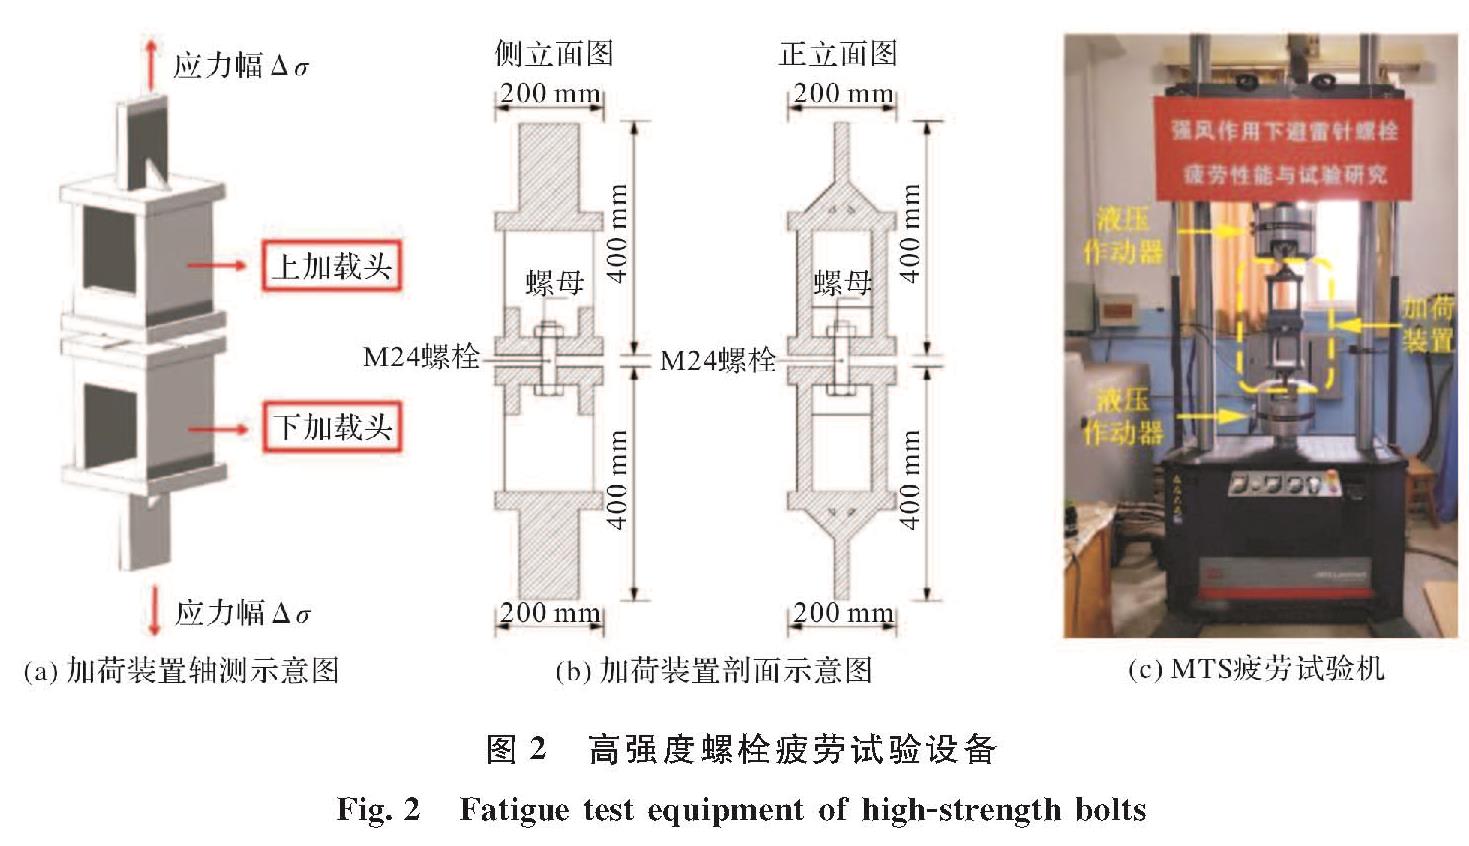 图2 高强度螺栓疲劳试验设备<br/>Fig.2 Fatigue test equipment of high-strength bolts